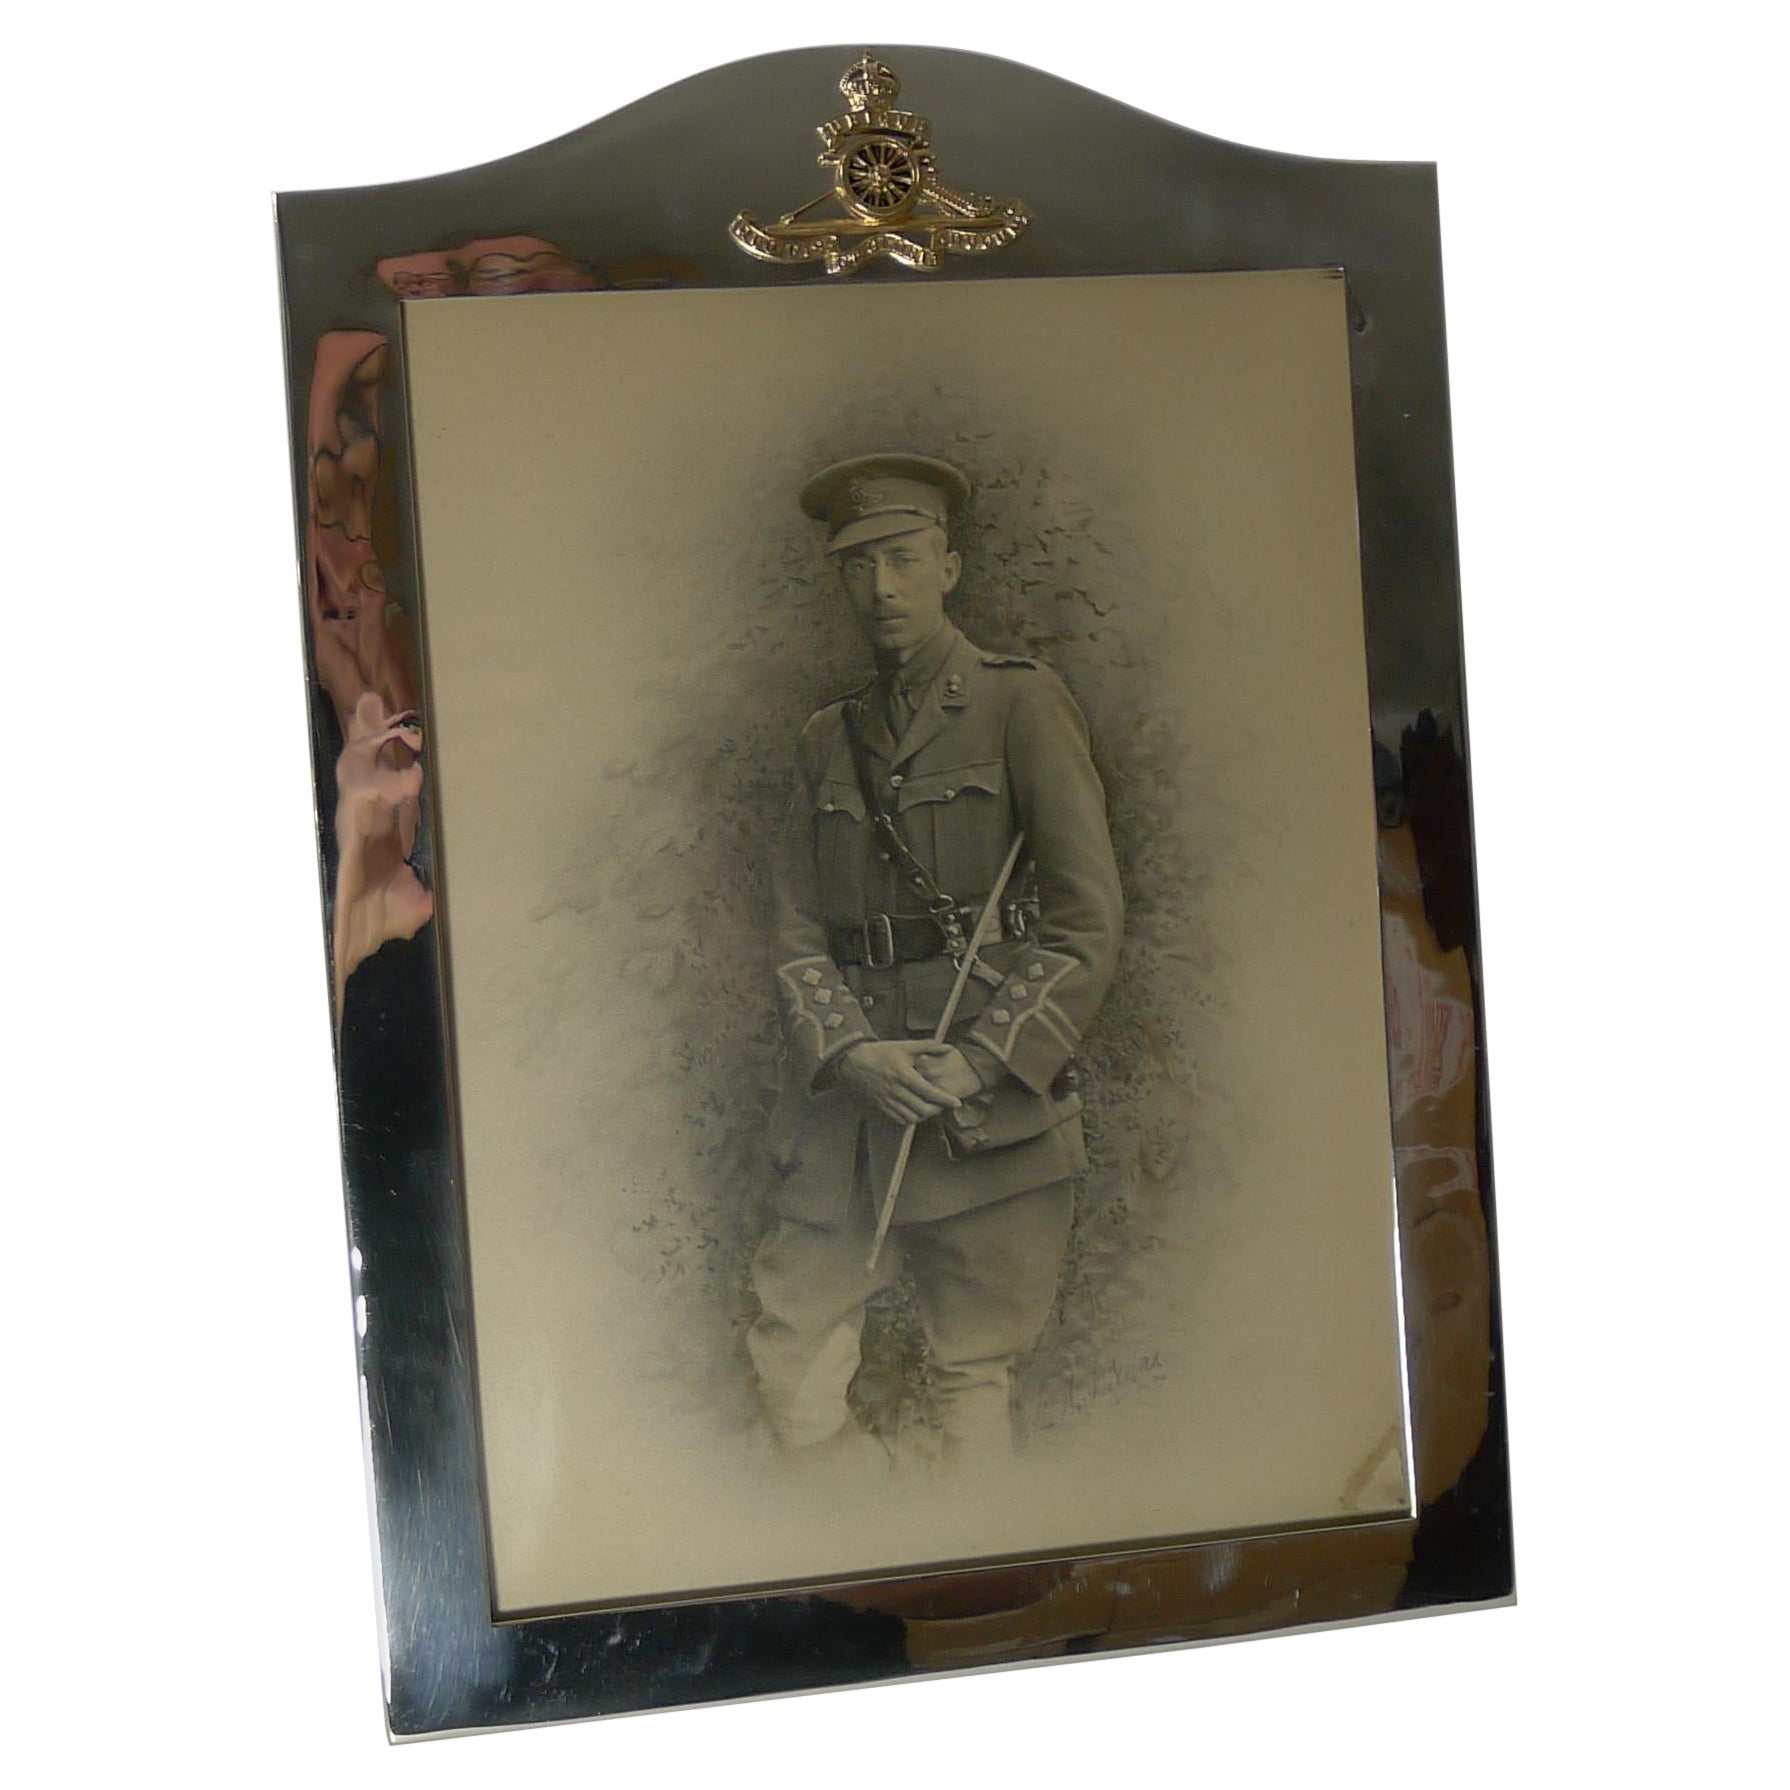 Grand cadre photo/cadre photo militaire anglais ancien en métal argenté, vers 1910